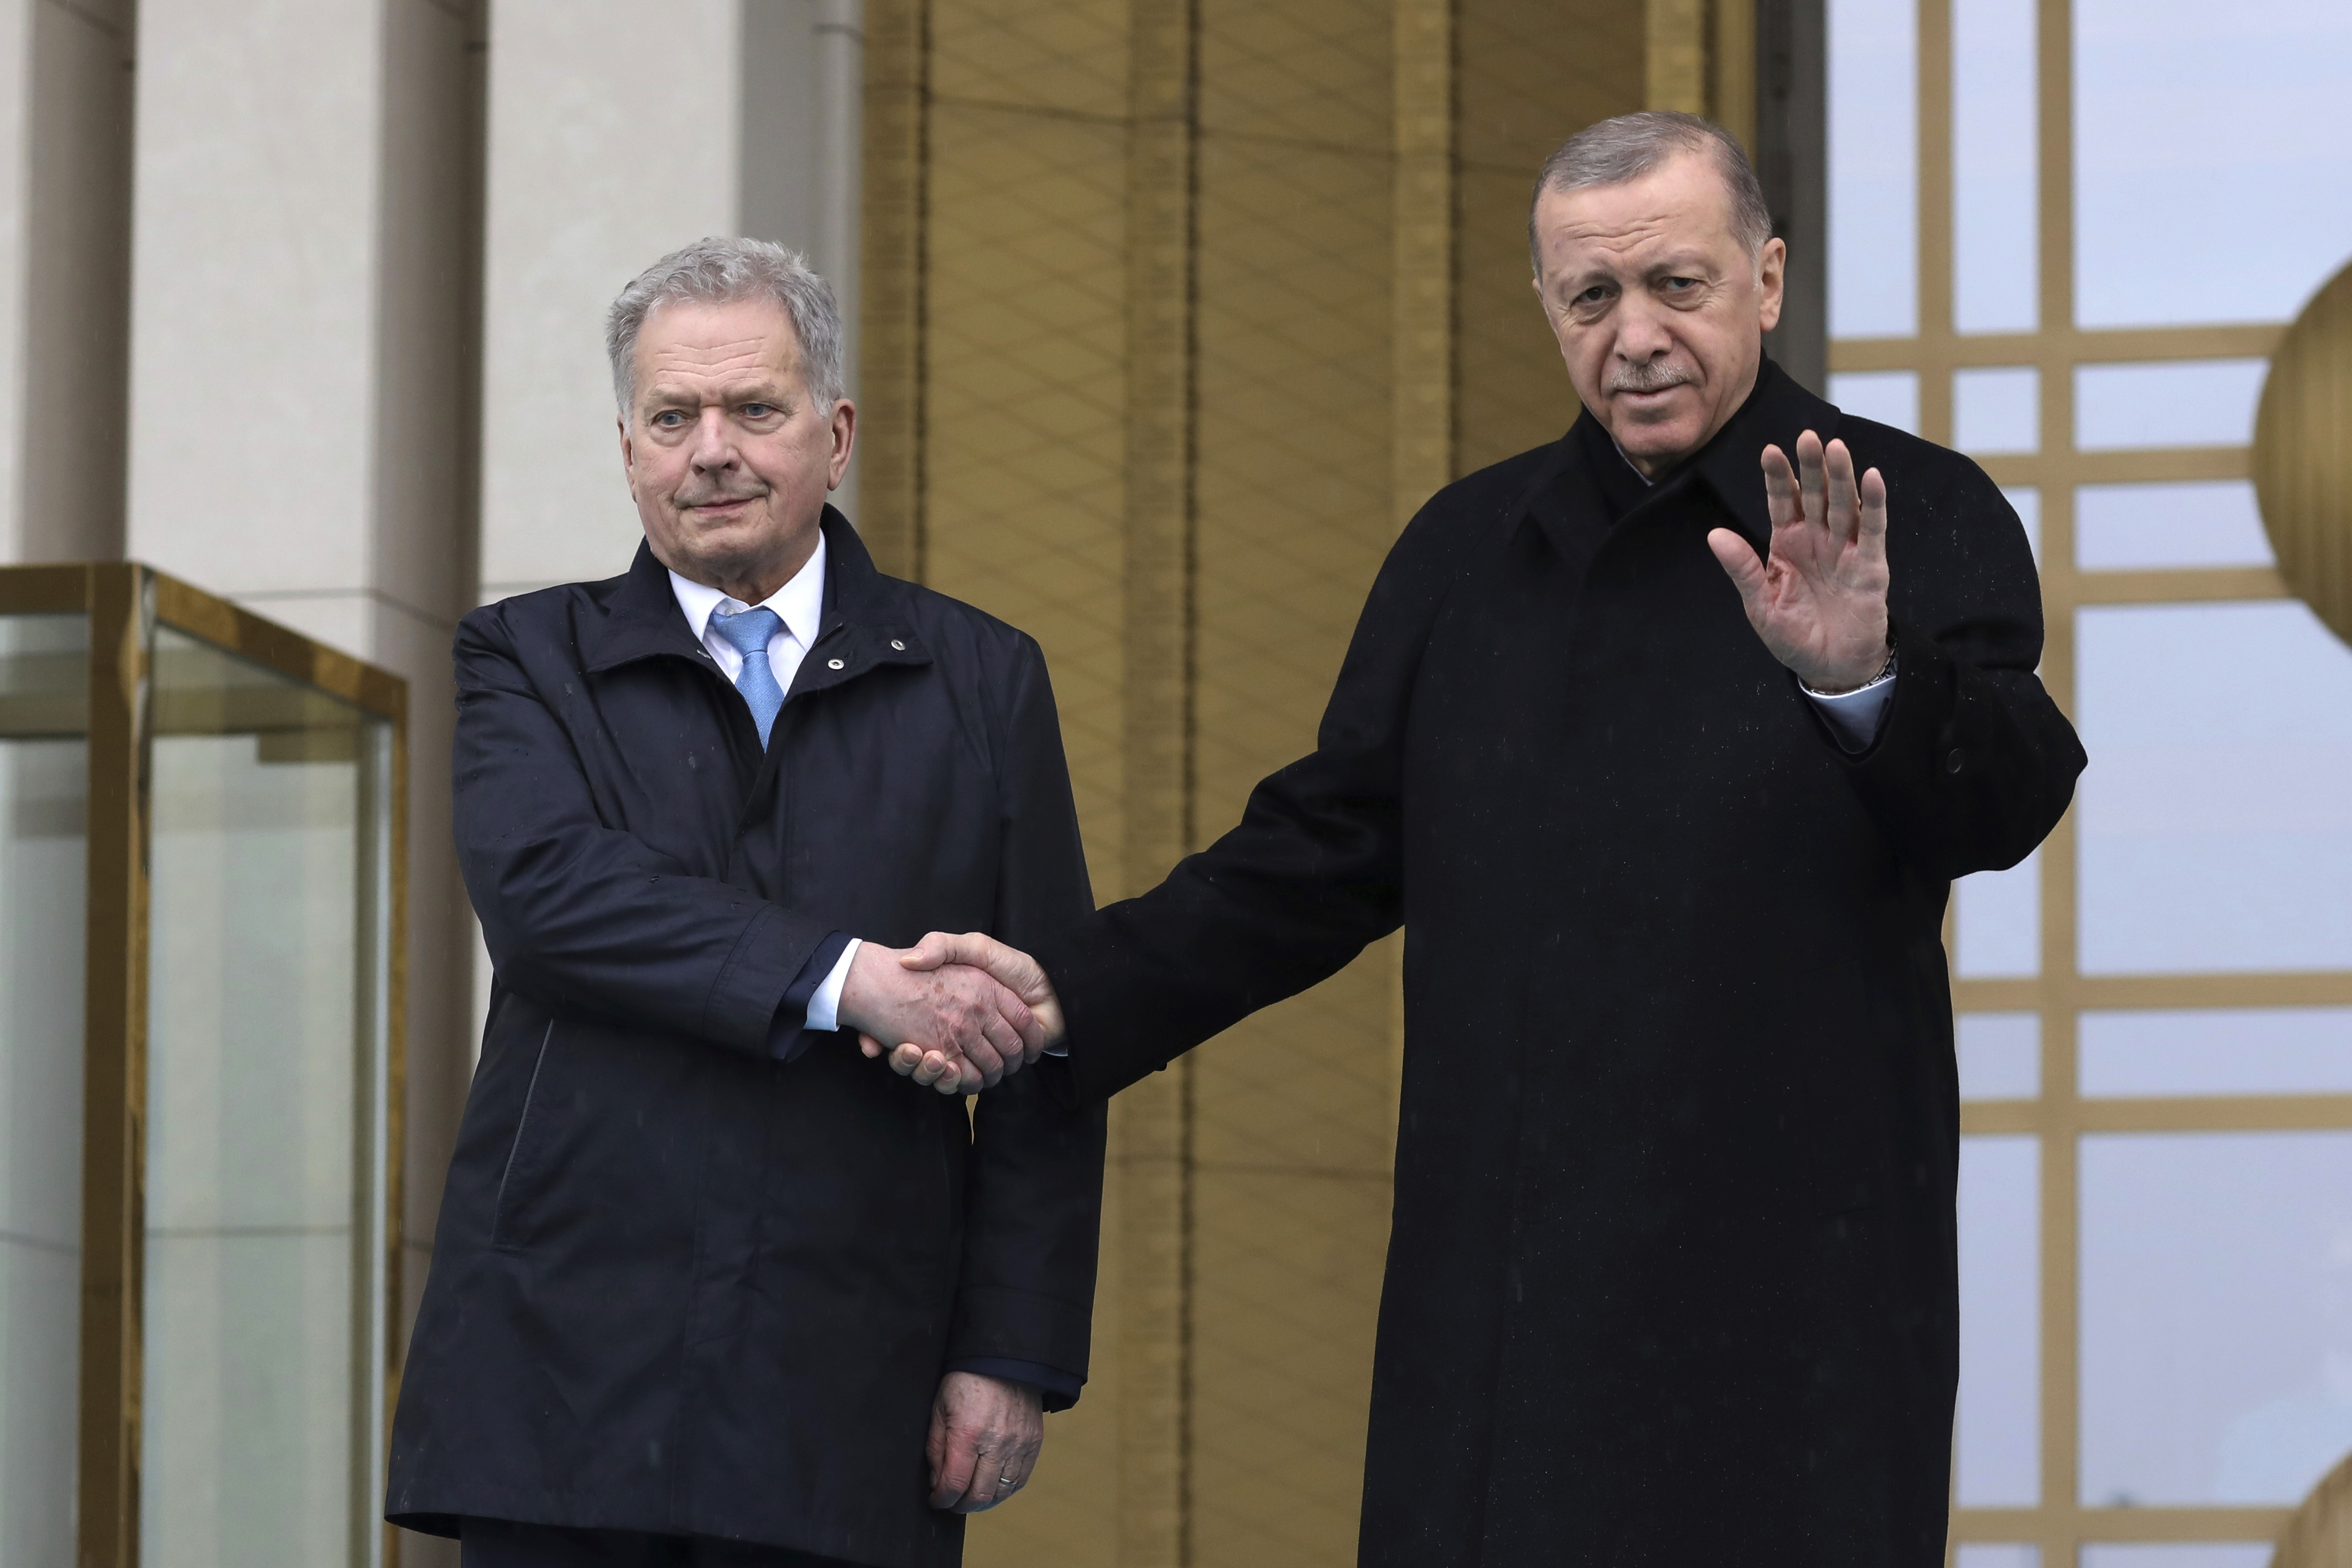 El presidente turco, Recep Tayyip Erdoğan, anunció el inicio del proceso de ratificación por su Parlamento para el ingreso de Finlandia, país que, tras el inicio de la invasión rusa de Ucrania, pidió junto a Suecia entrar en la OTAN. De ese modo, ambos Estados pusieron fin a su tradición neutral. (AP)